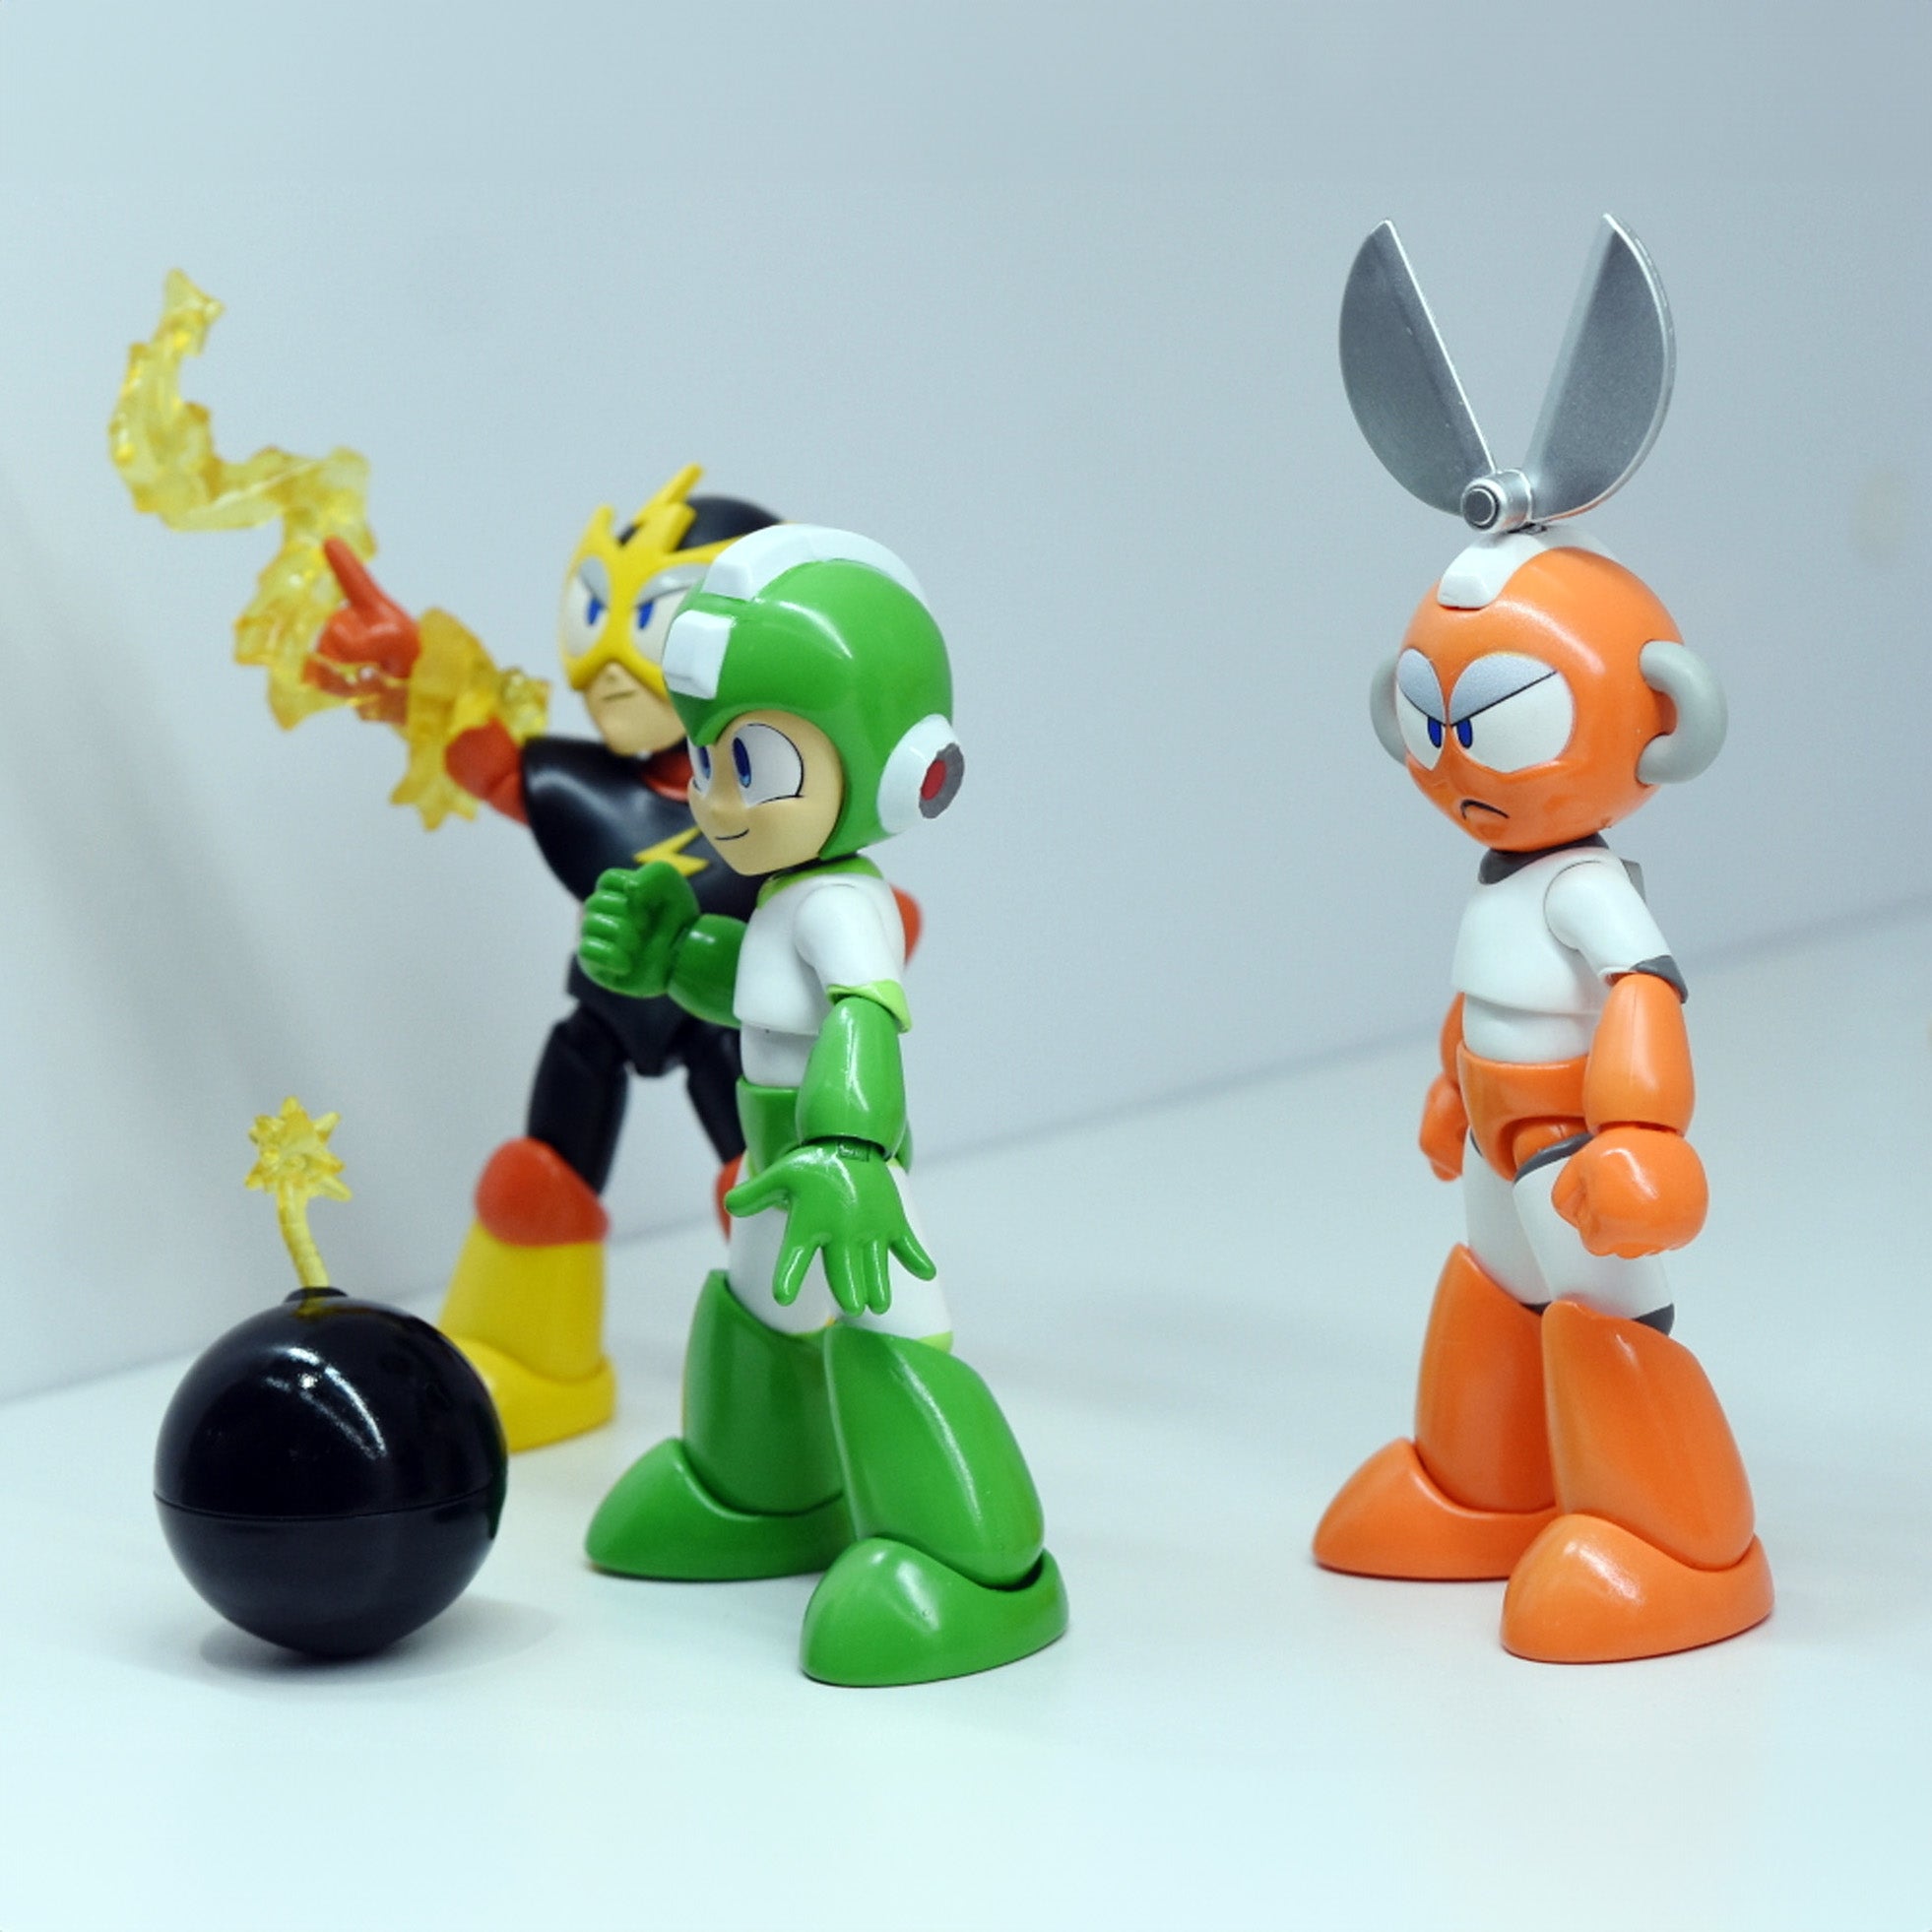 Jada Toys - Mega Man (Rockman) - Hyper Bomb Mega Man (4.5&quot;) - Marvelous Toys